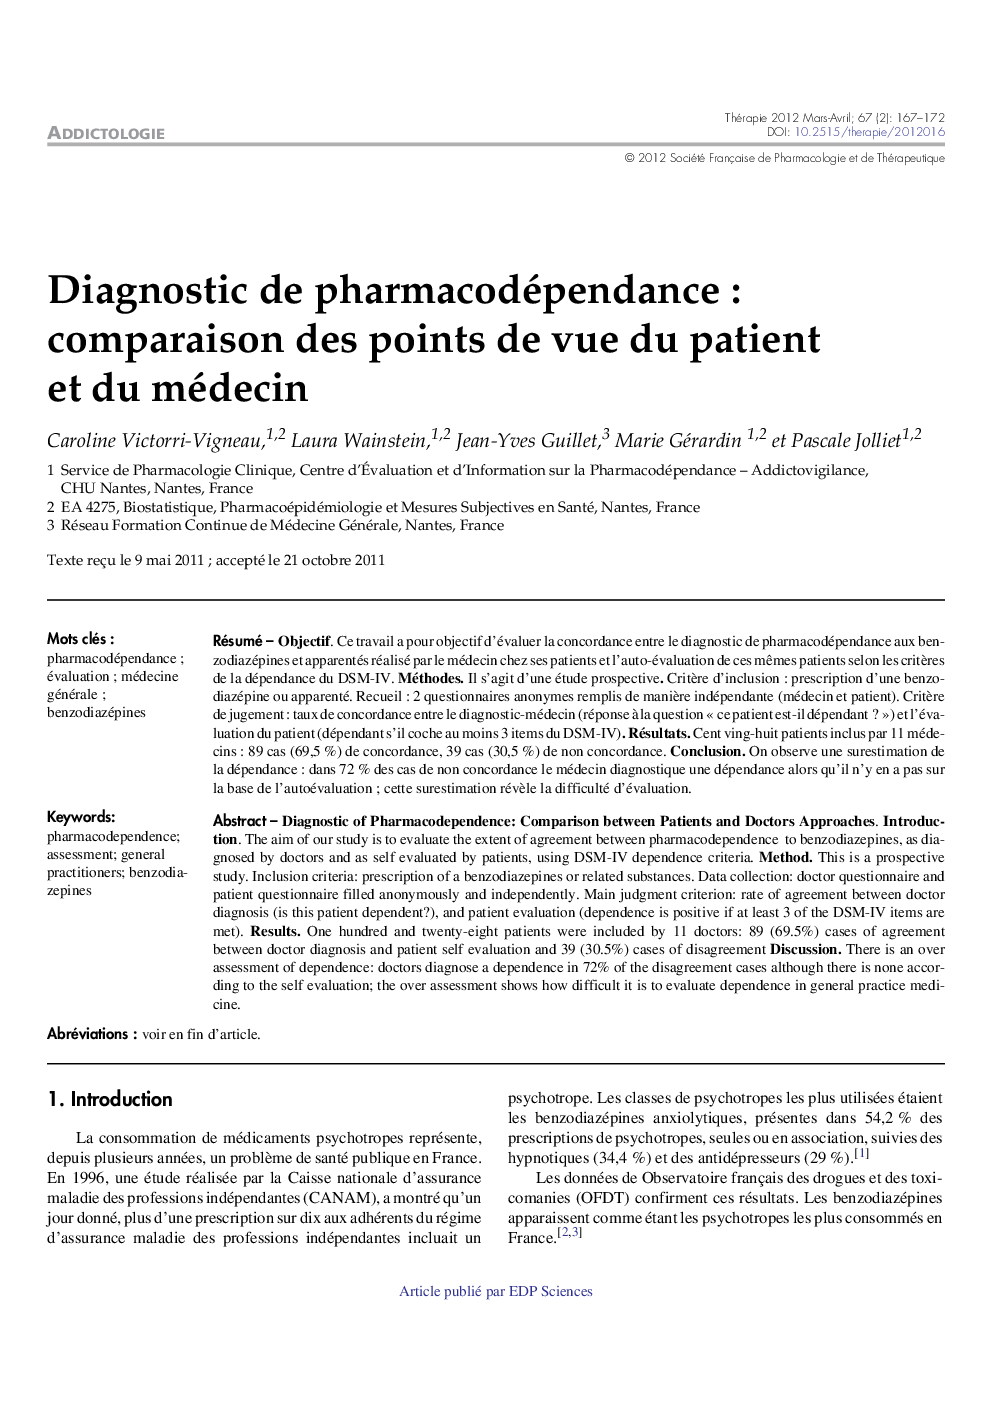 Diagnostic de pharmacodépendance : comparaison des points de vue du patient et du médecin